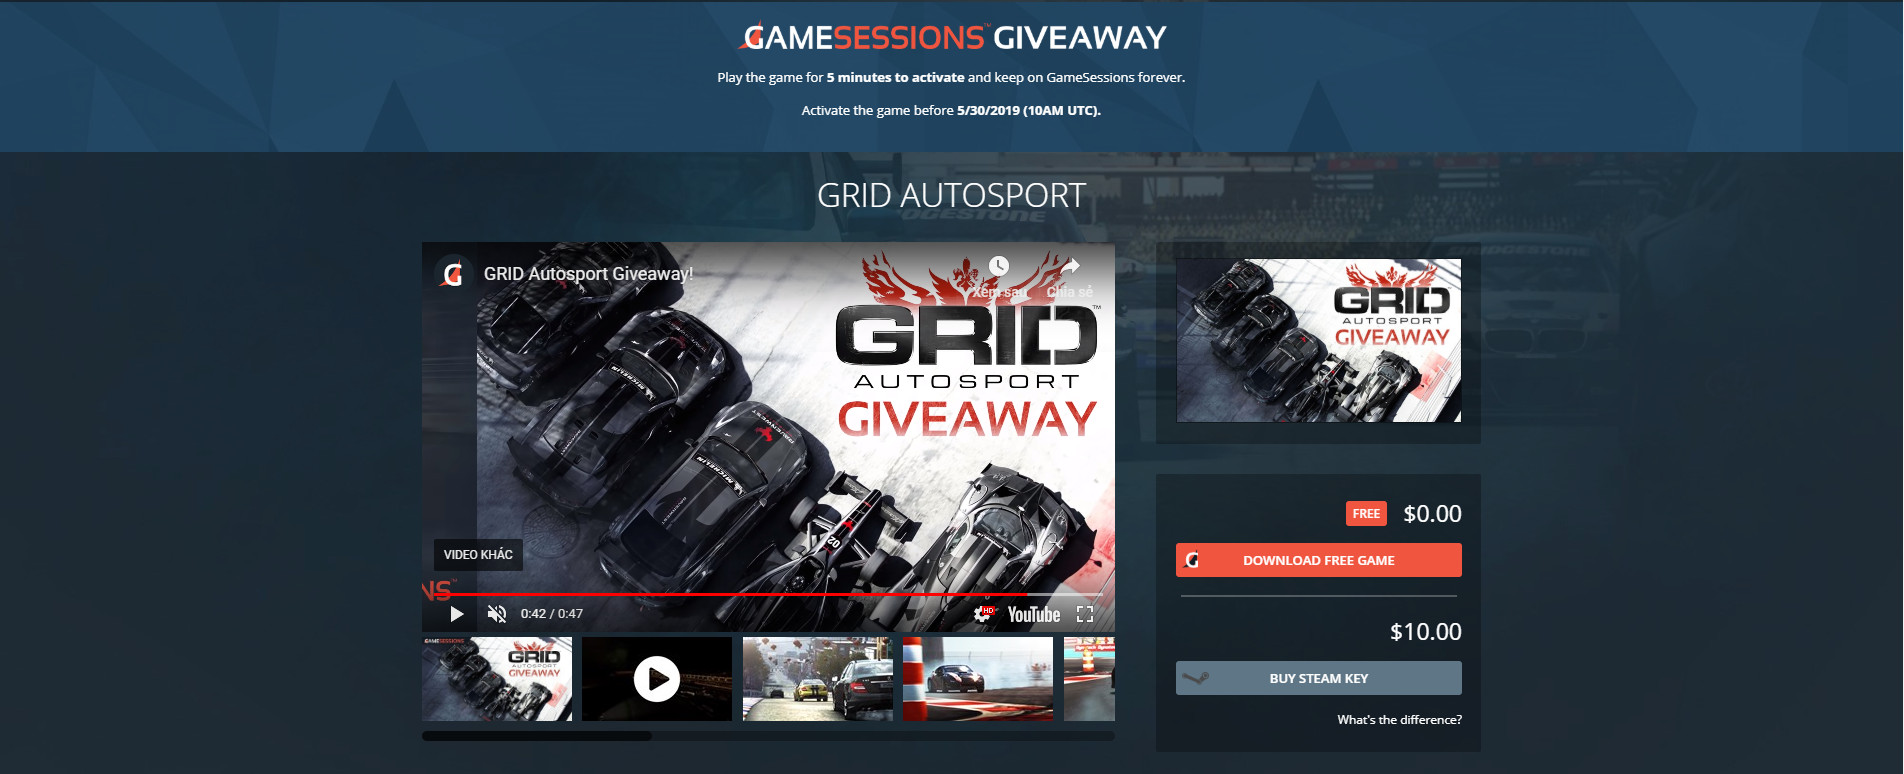 GameSessions đang
miễn phí trong thời gian ngắn tựa game đua xe GRID Autosport
trị giá 39,99$, anh em nhanh tay nhé